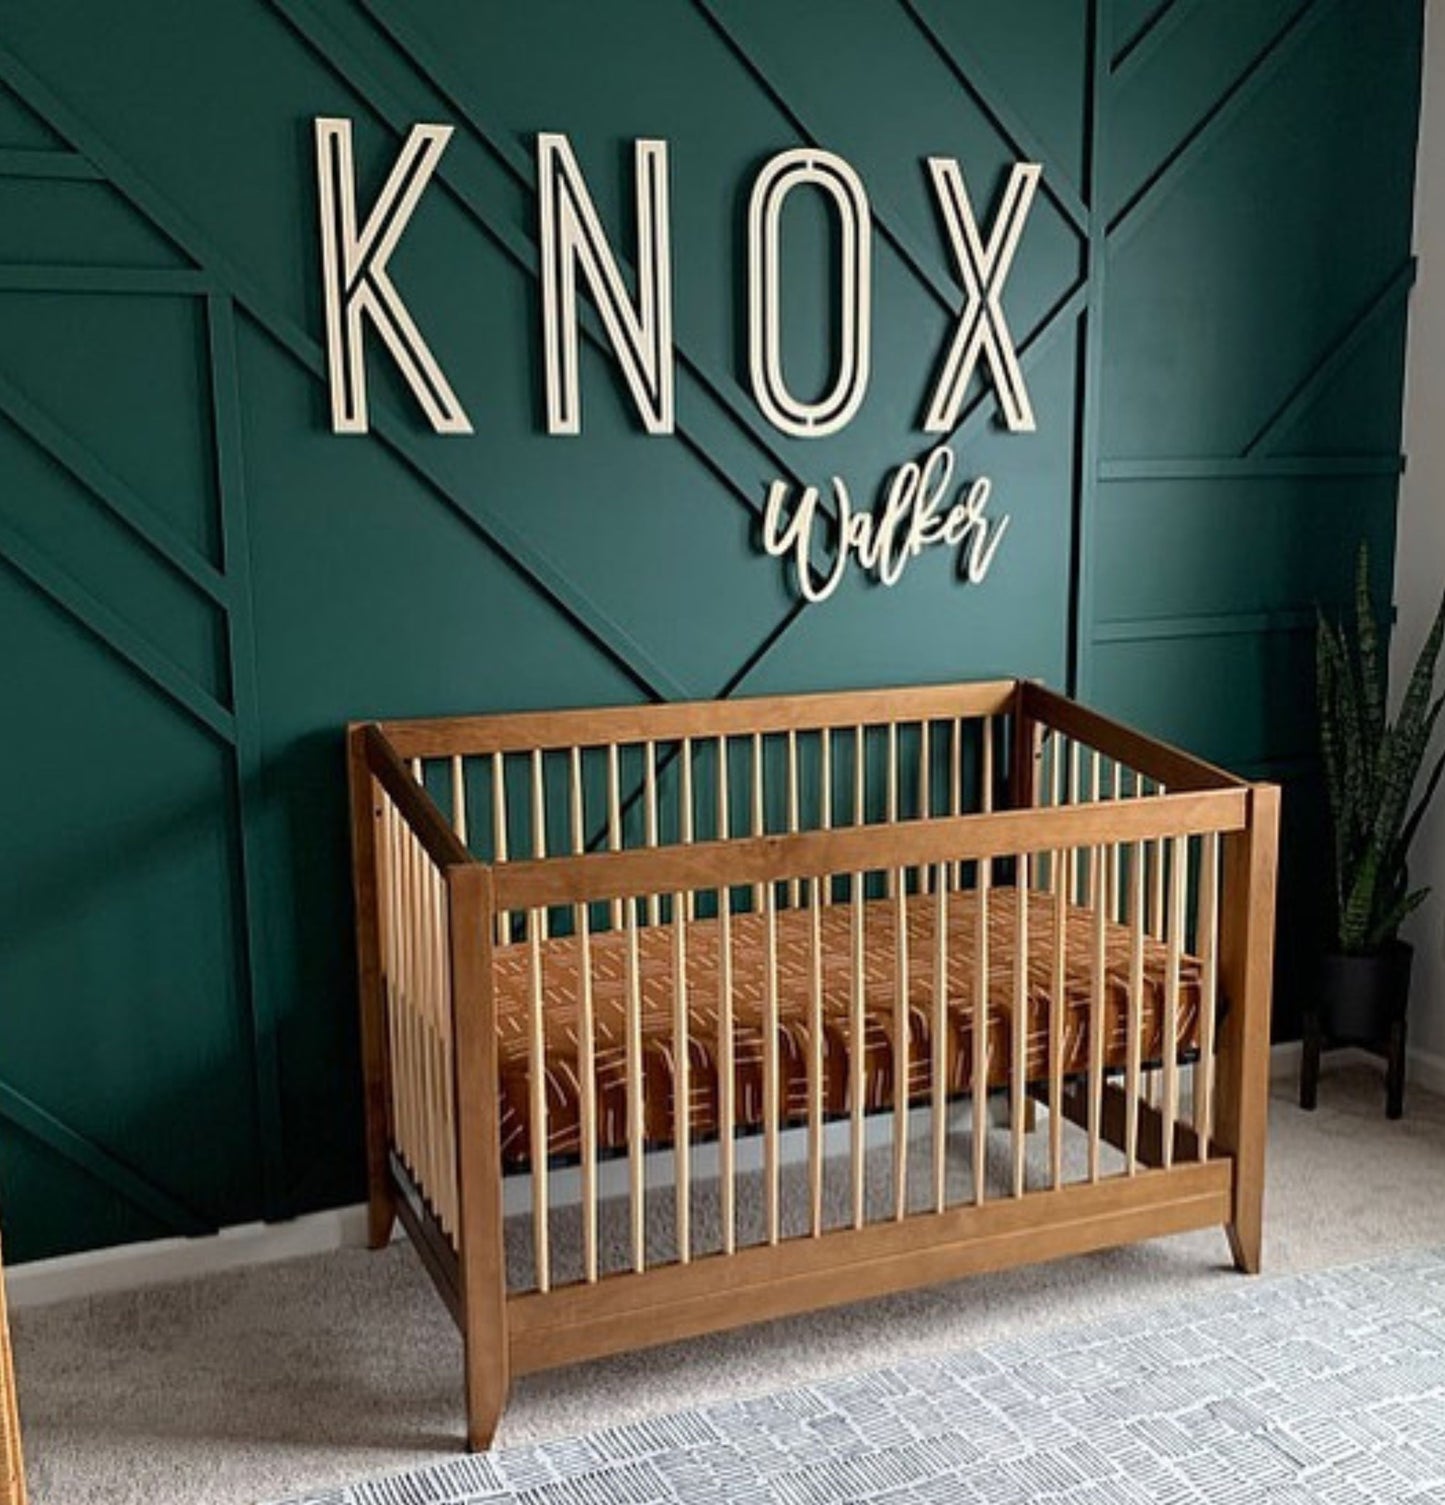 The Knox Wood Nursery Sign